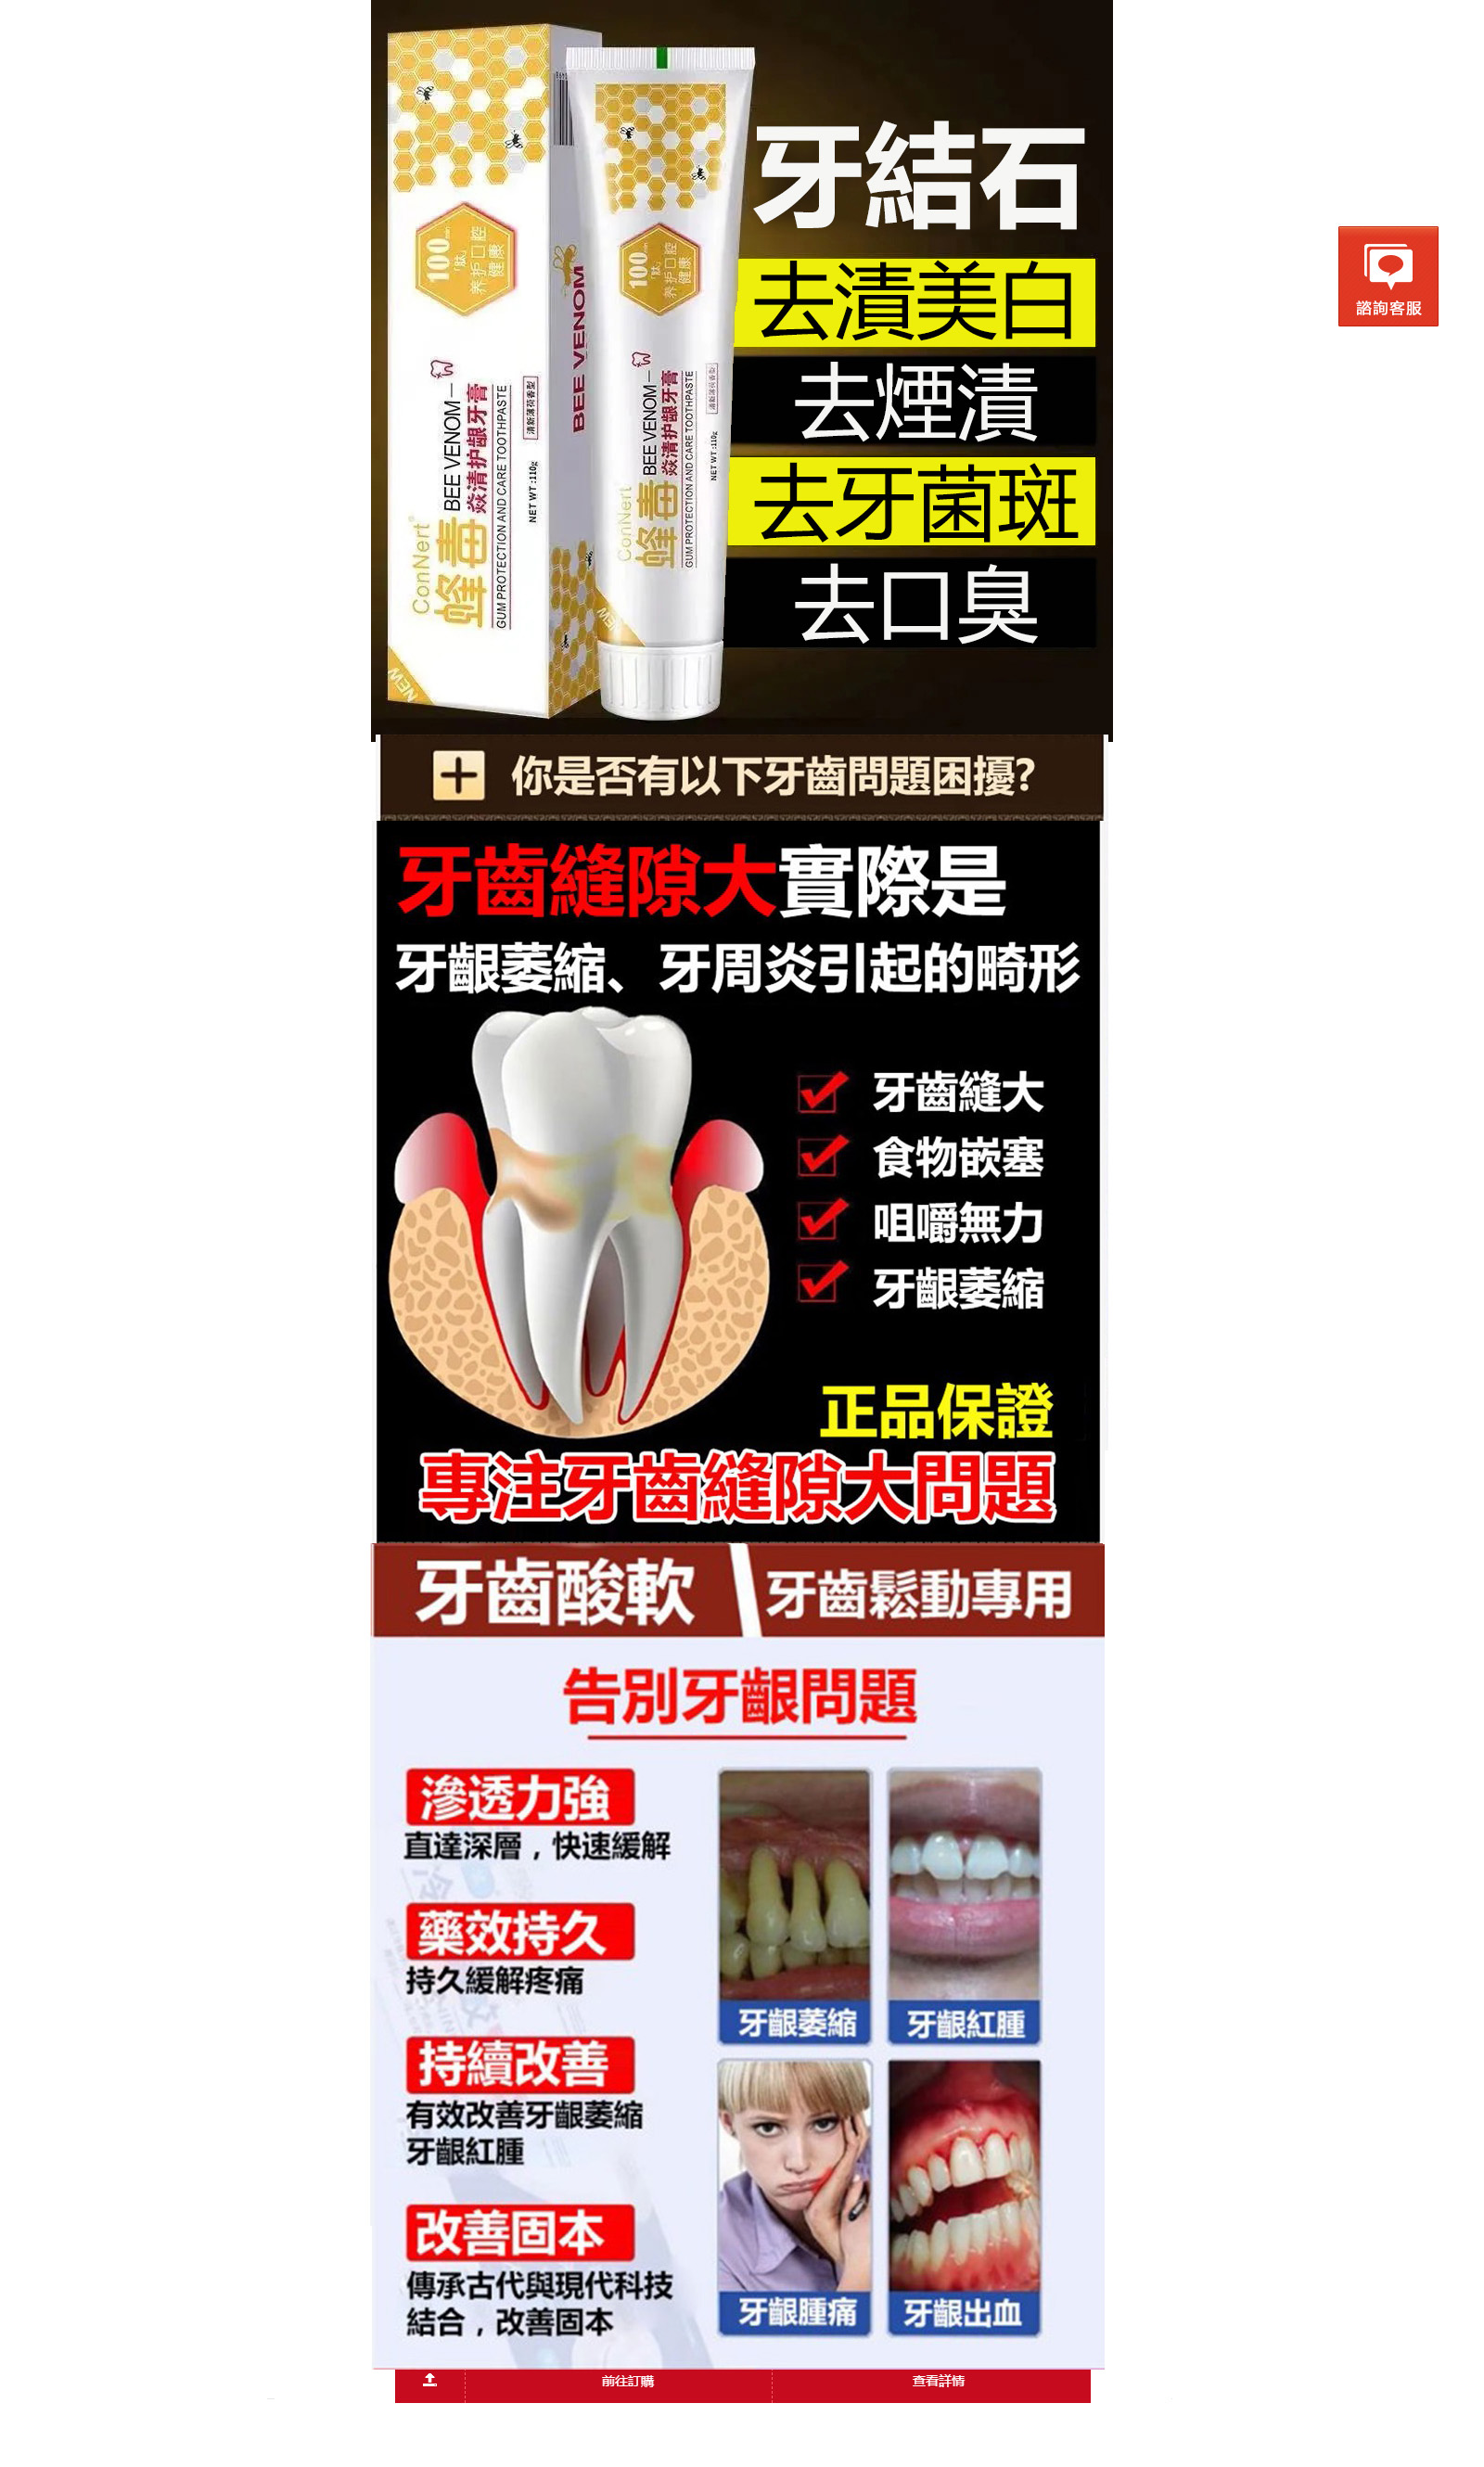 美白牙齒、牙齒美白-台灣美白牙膏專賣店